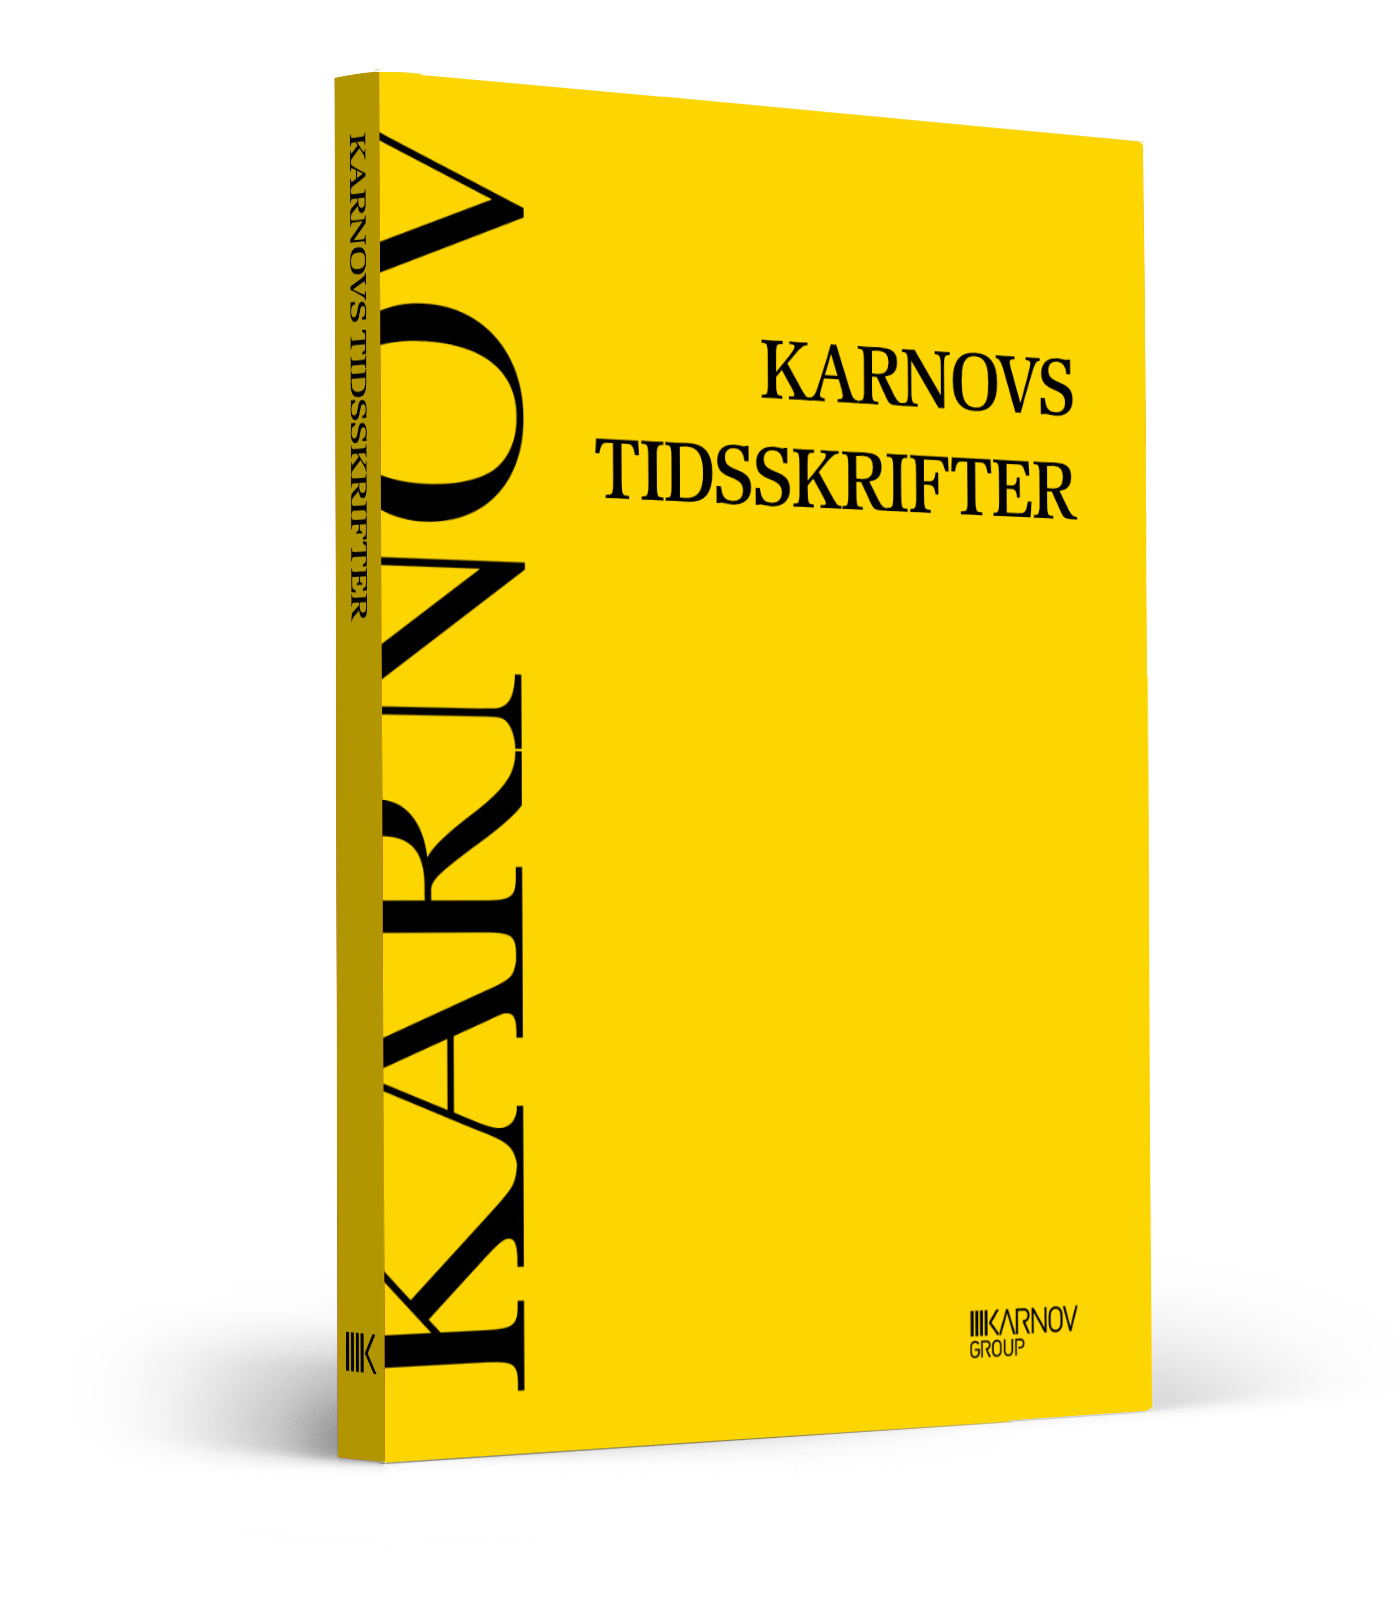 Karnovs-tidsskrifter